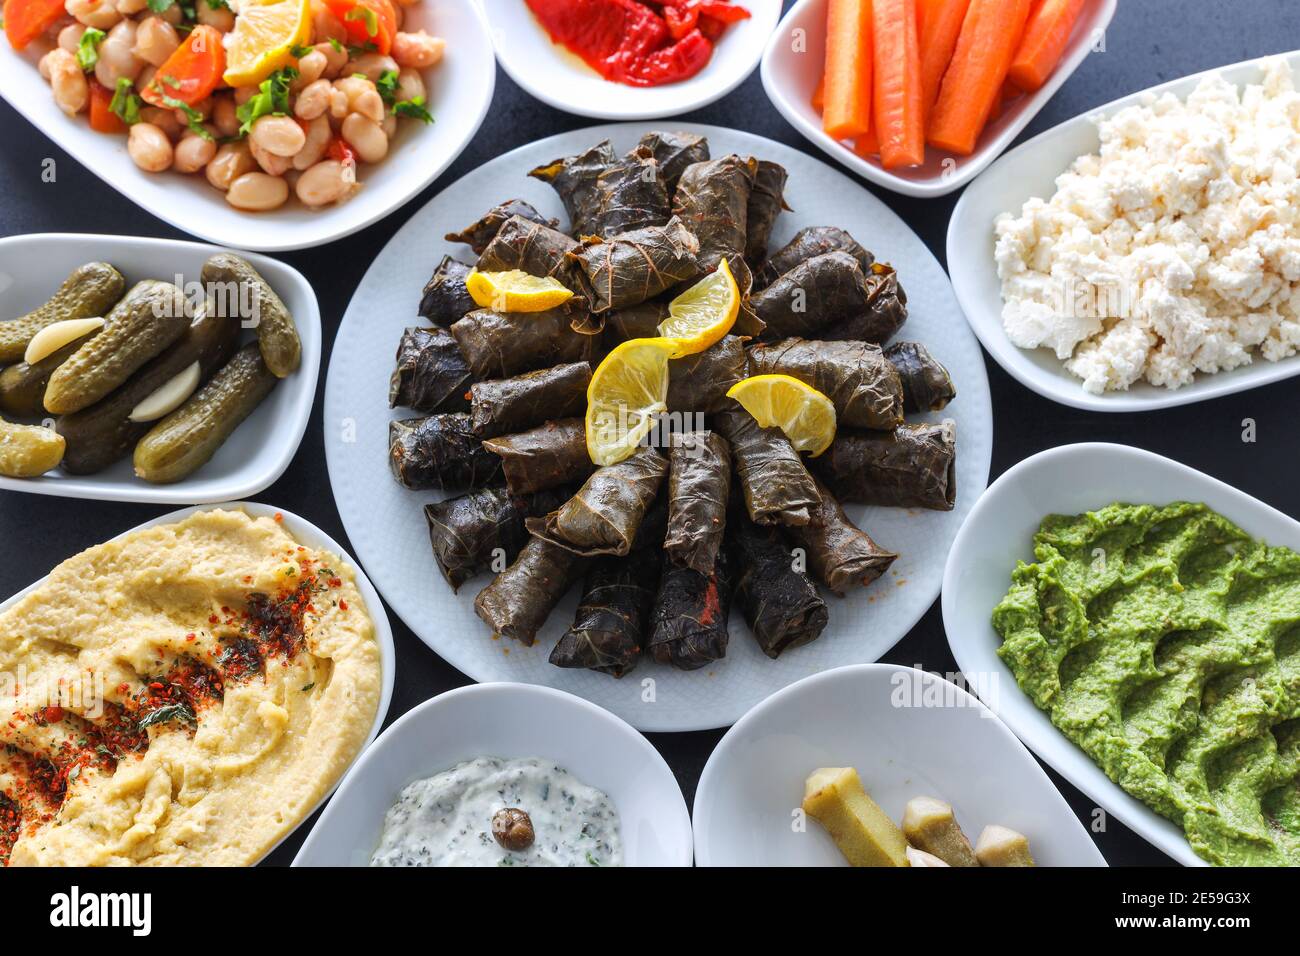 Cena tradizionale turca e greca a base di verdure meze con foglie d'uva ripiene, olive, hummus colorato, antipasti freddi (con olio d'oliva) Foto Stock